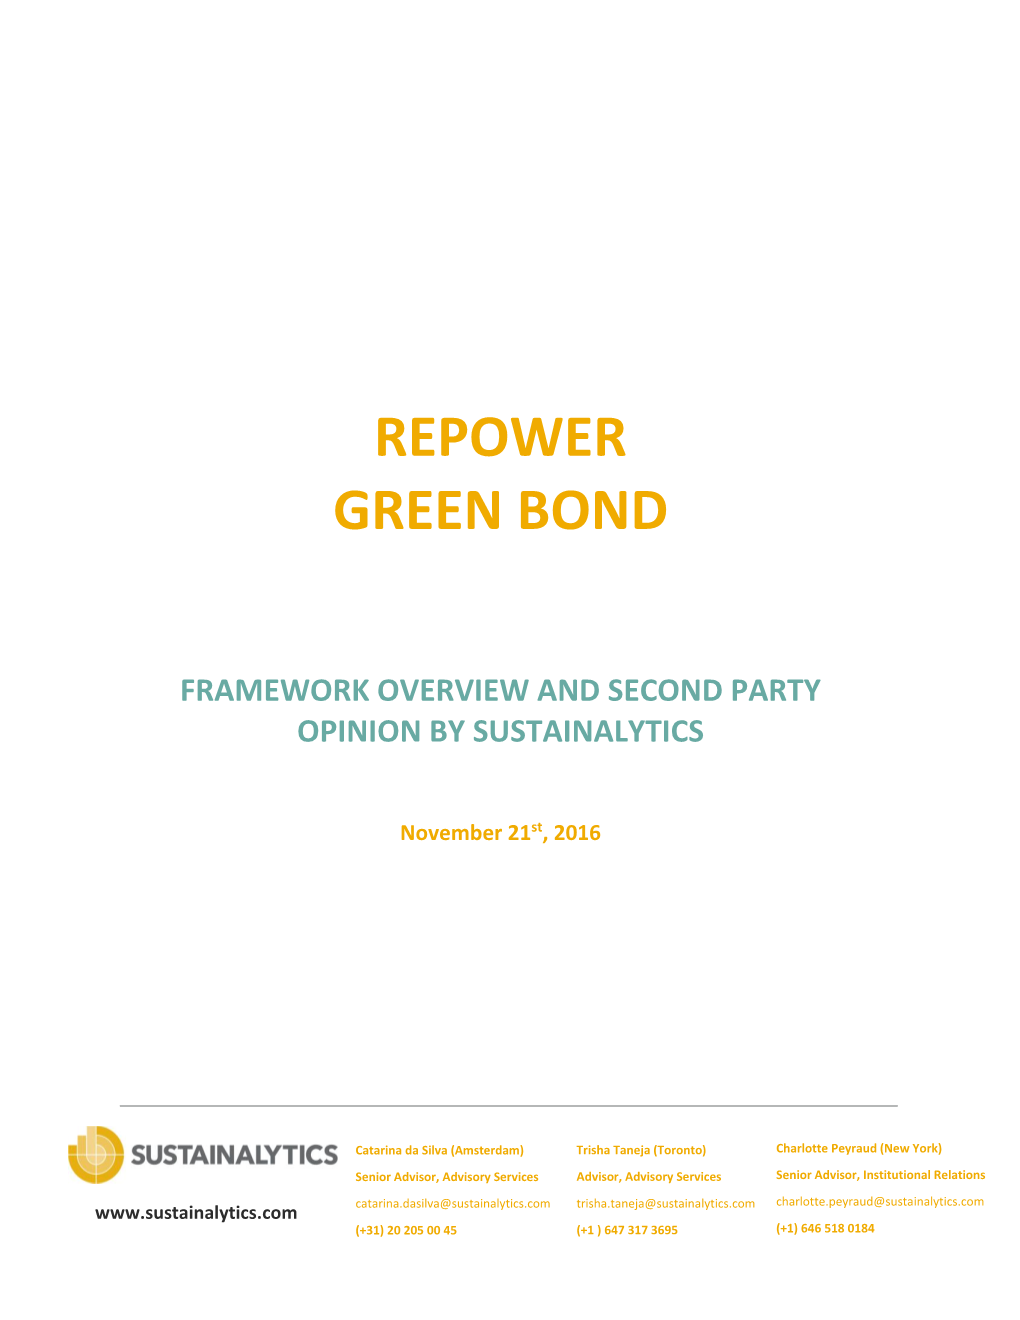 Repower Green Bond Framework Overview